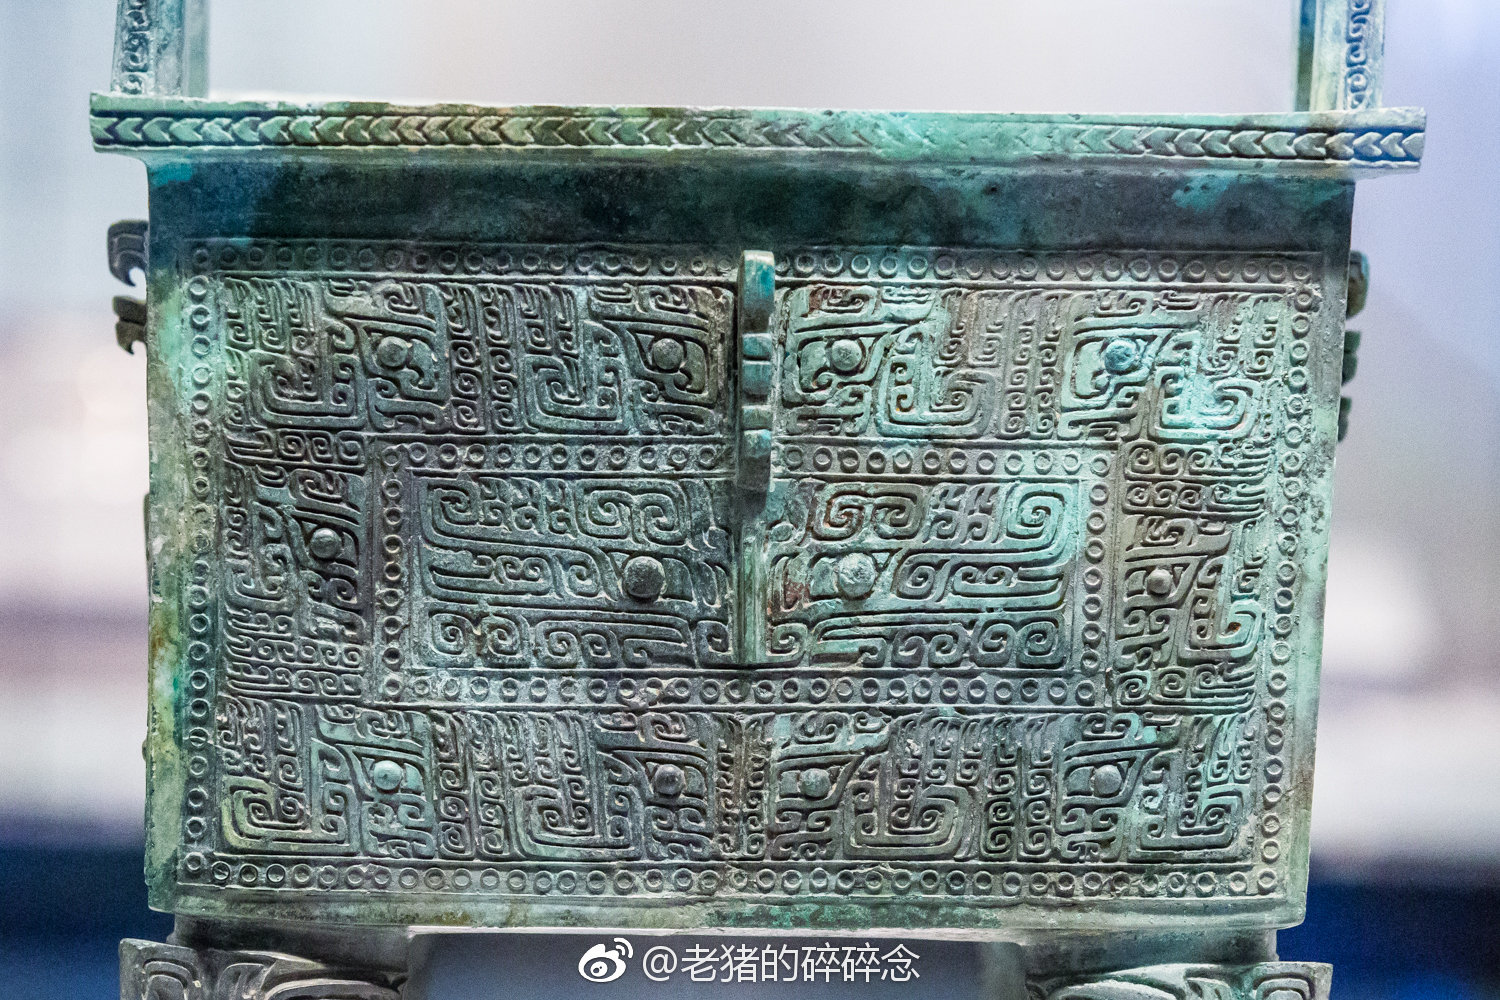 乳丁纹青铜方鼎 | 中国国家博物馆